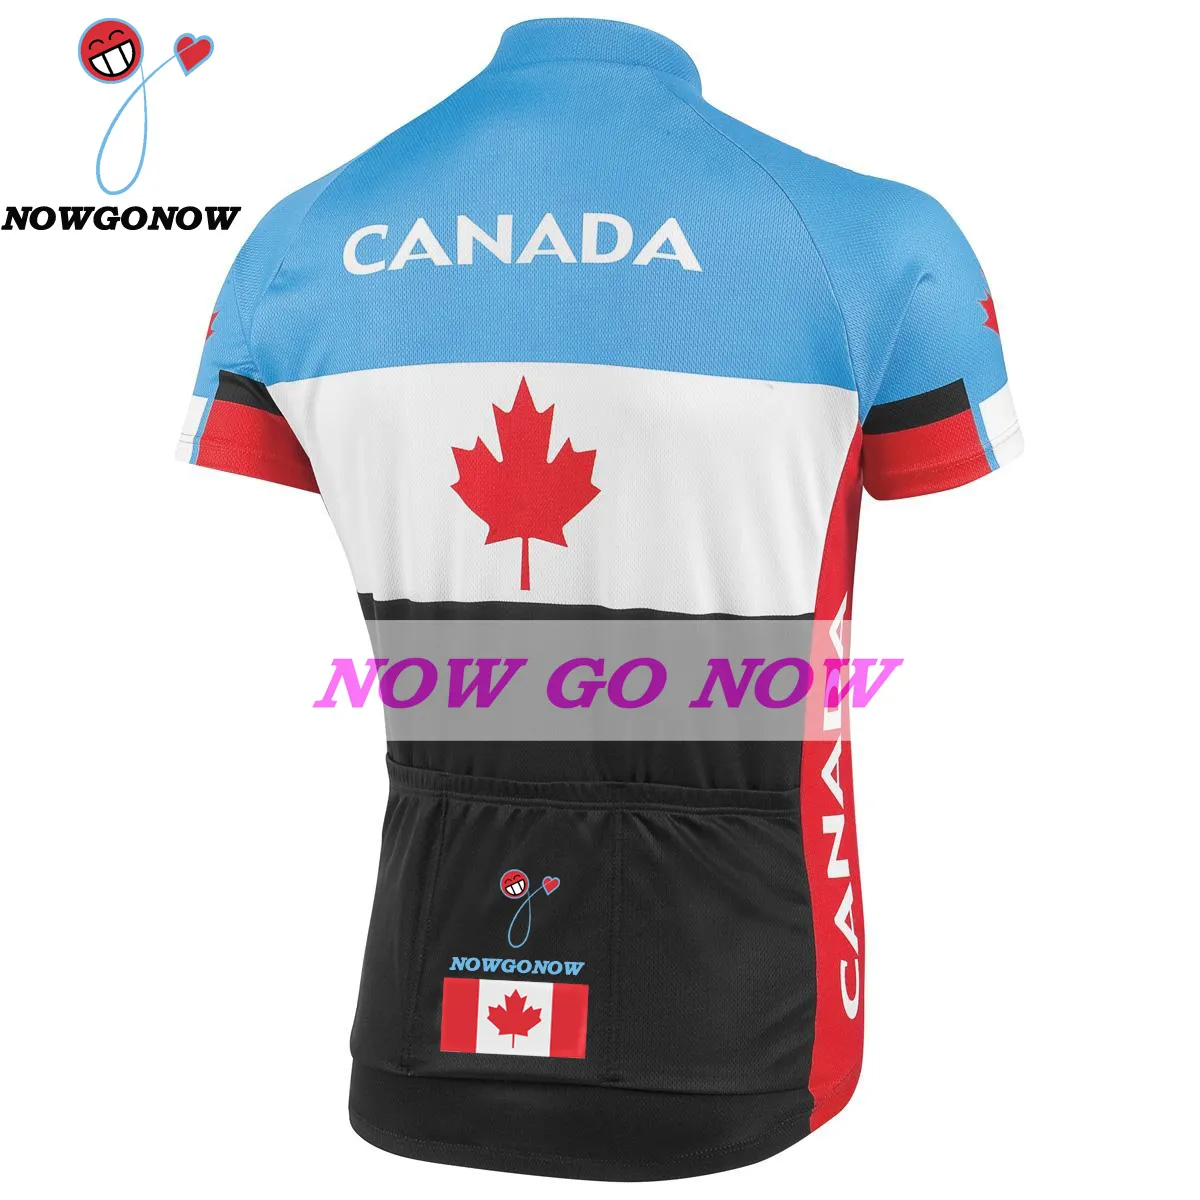 custom 2017 maglia ciclismo uomo Canada abbigliamento squadra abbigliamento bici nowgonow Retro Jersey pro racing ropa ciclismo mtb road bicicleta